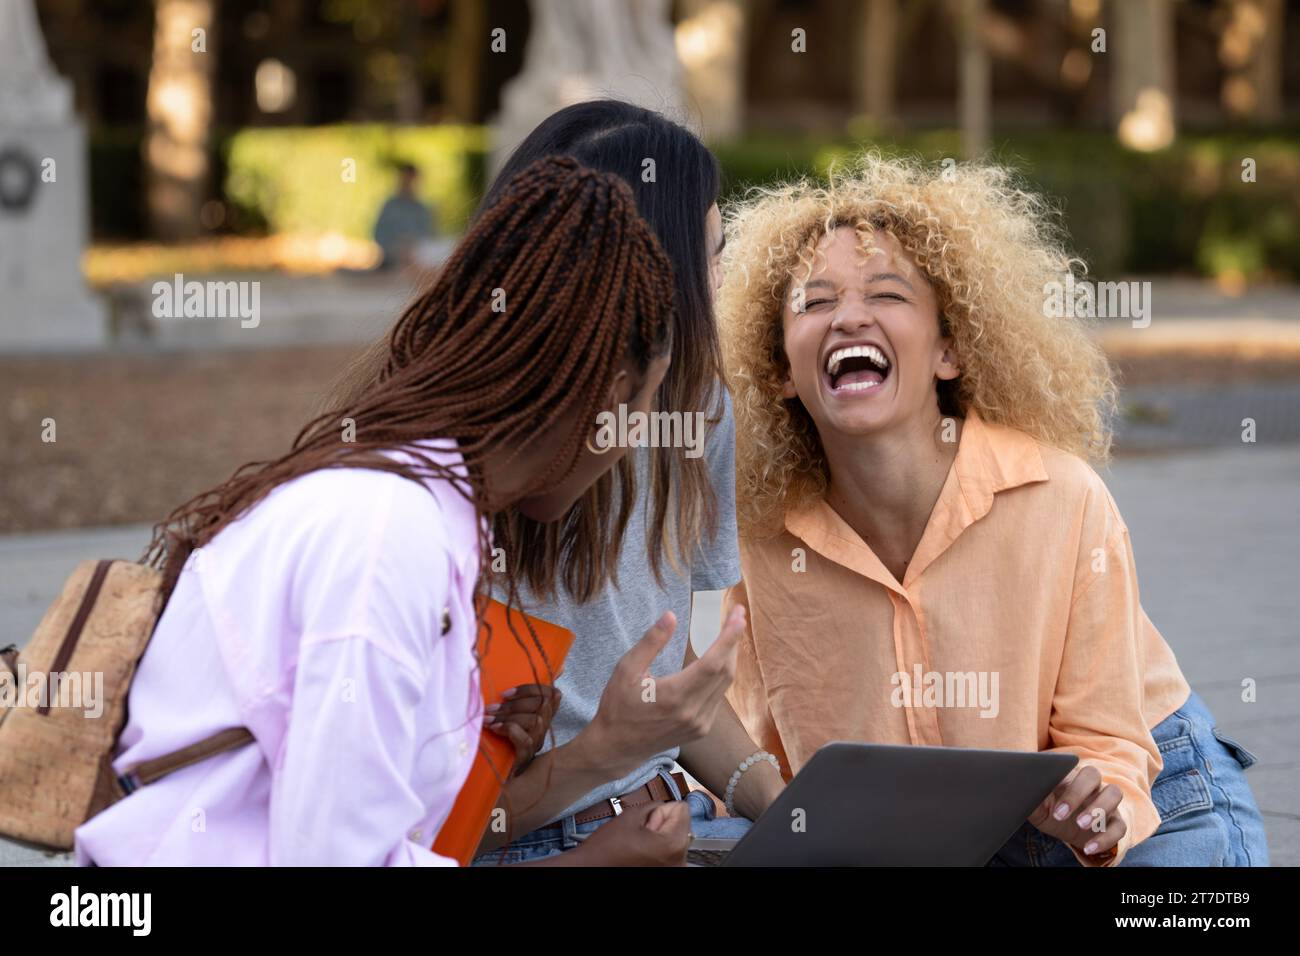 Drei multiethnische Studenten, die nach dem Universitätsunterricht zusammen gelacht haben, lachen mit positiver Stimmung auf dem Campus Stockfoto